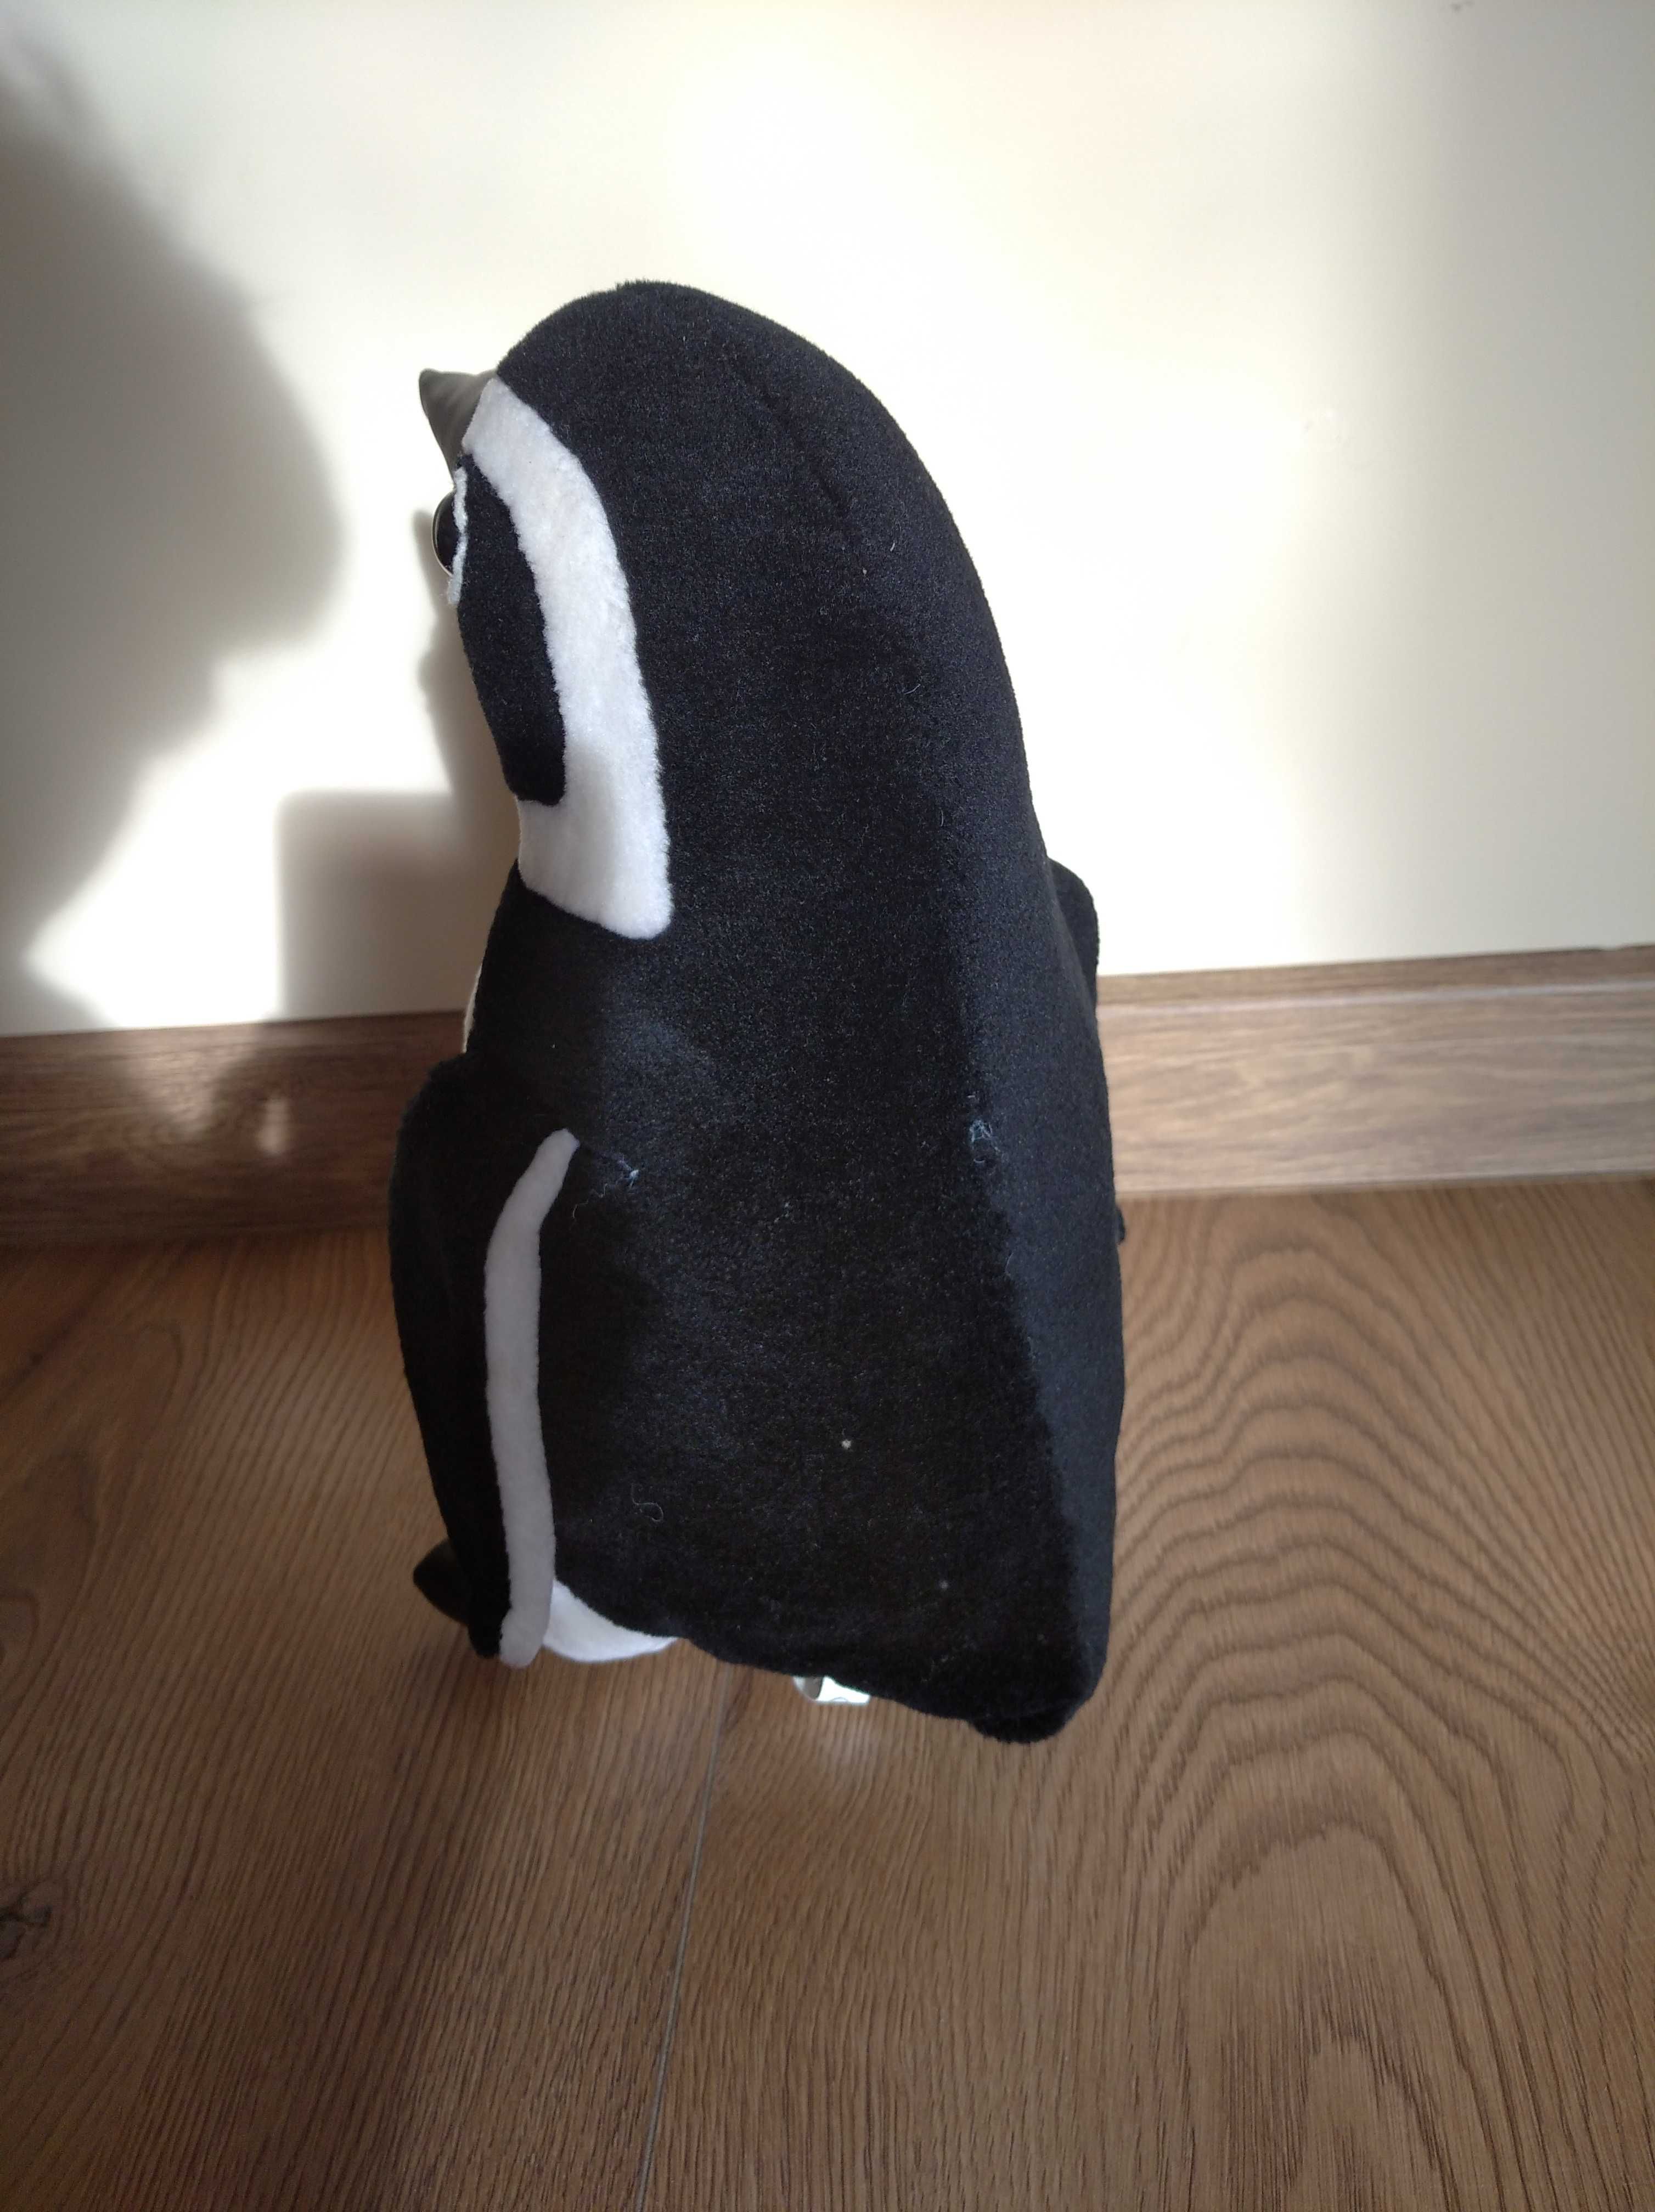 Pingwin maskotka 33 cm wysokości